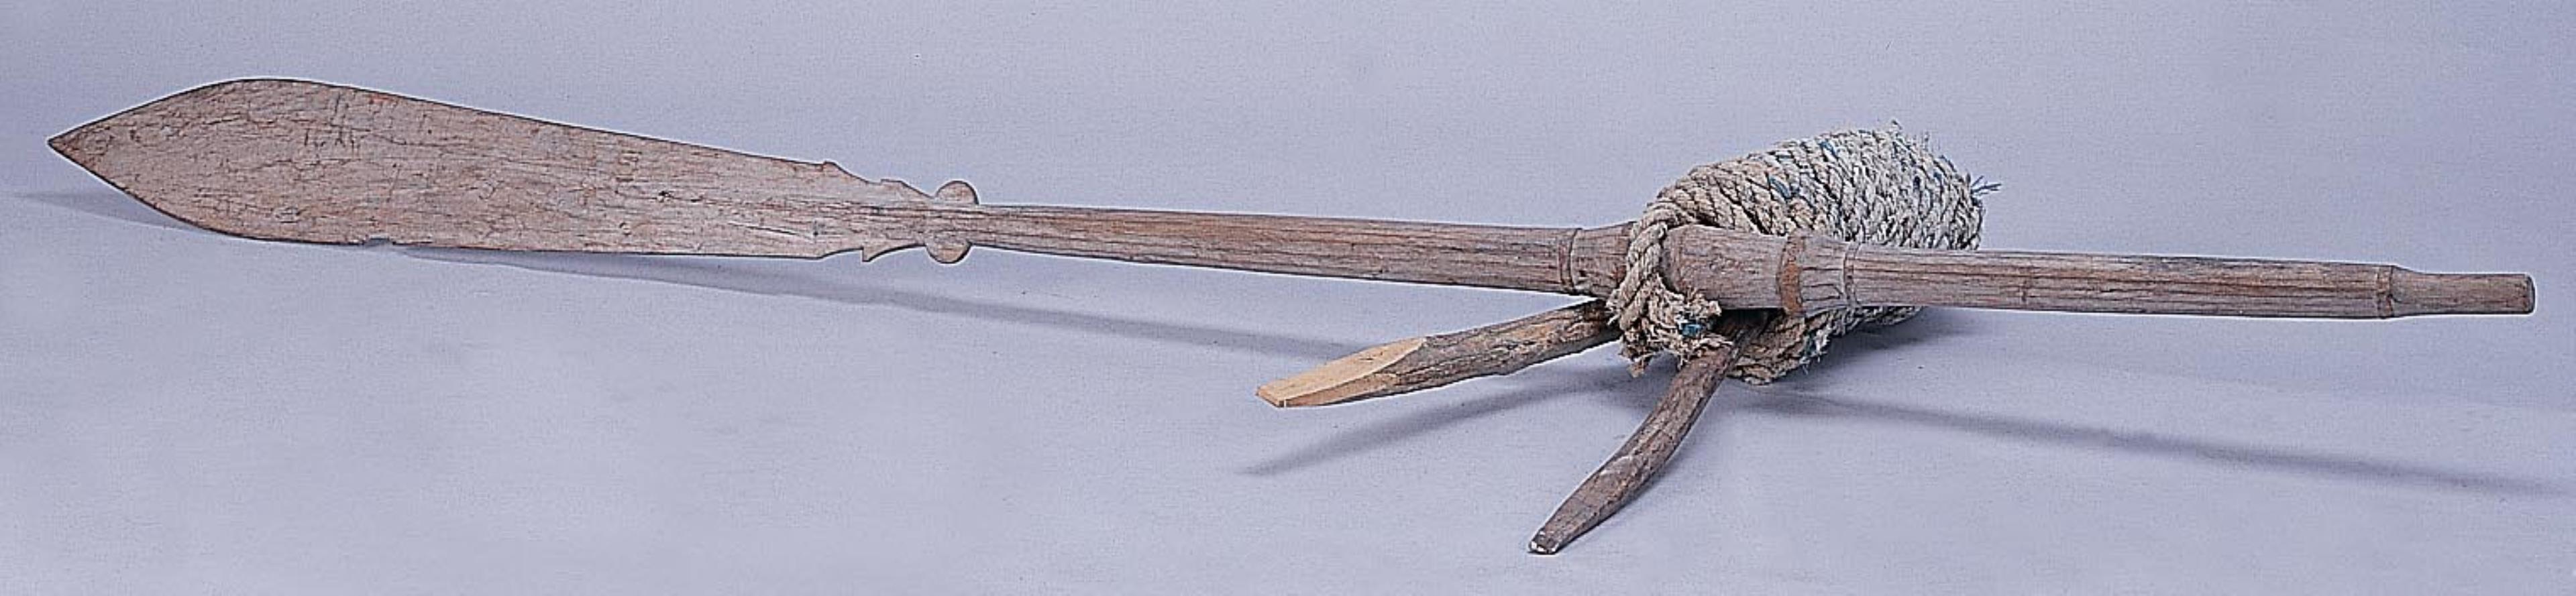 船槳與槳架 (共3張)